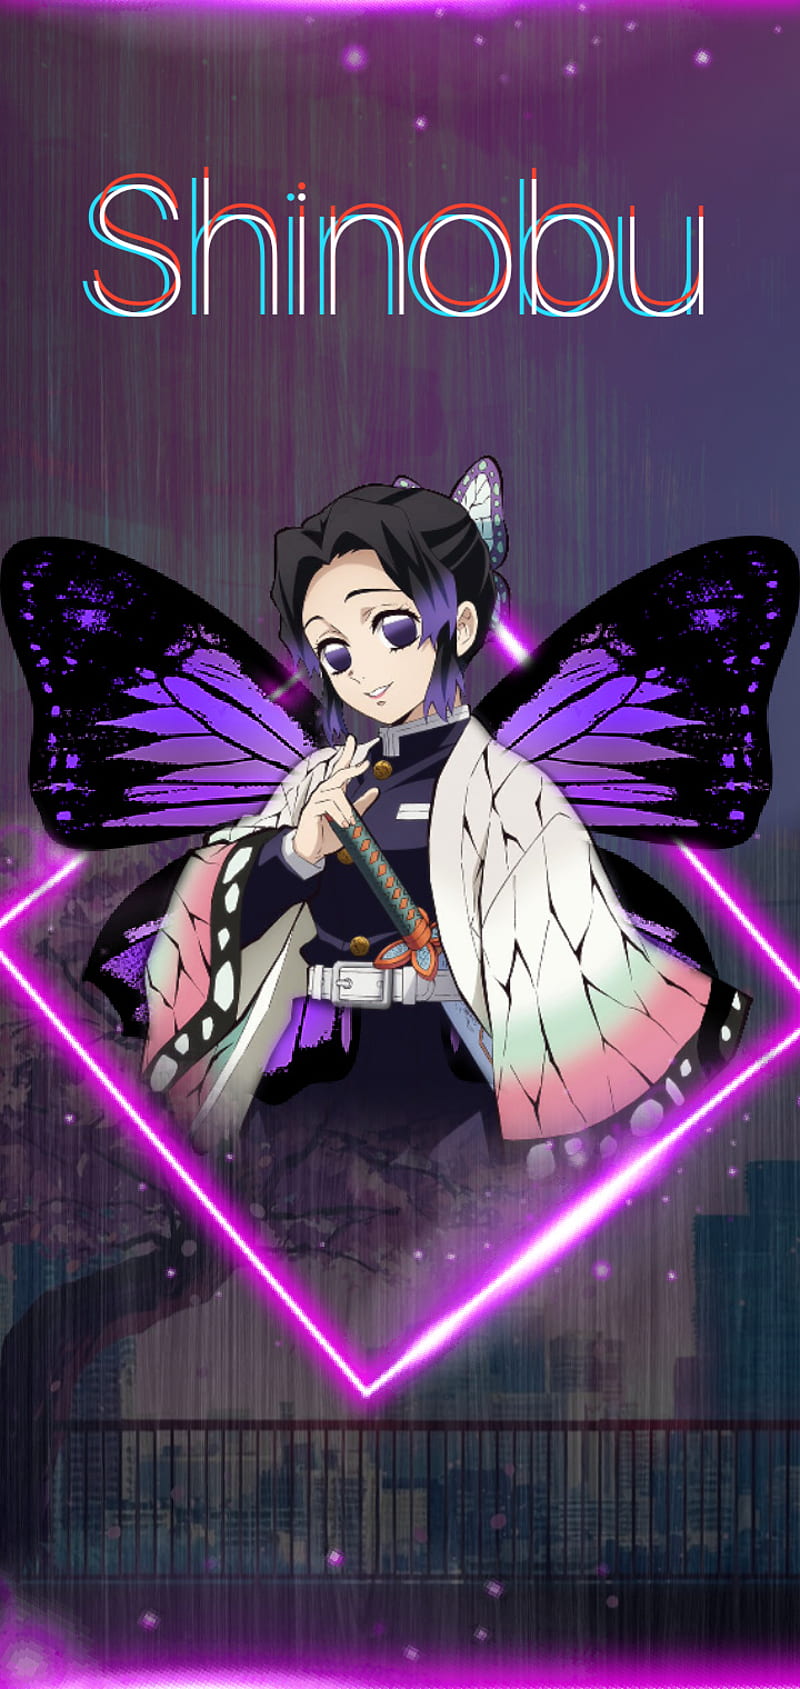 Shinobu Anime Butterfly Demon Slayer Girl Hashira Kimetsu No Yaiba Purple Hd Mobile Wallpaper Peakpx